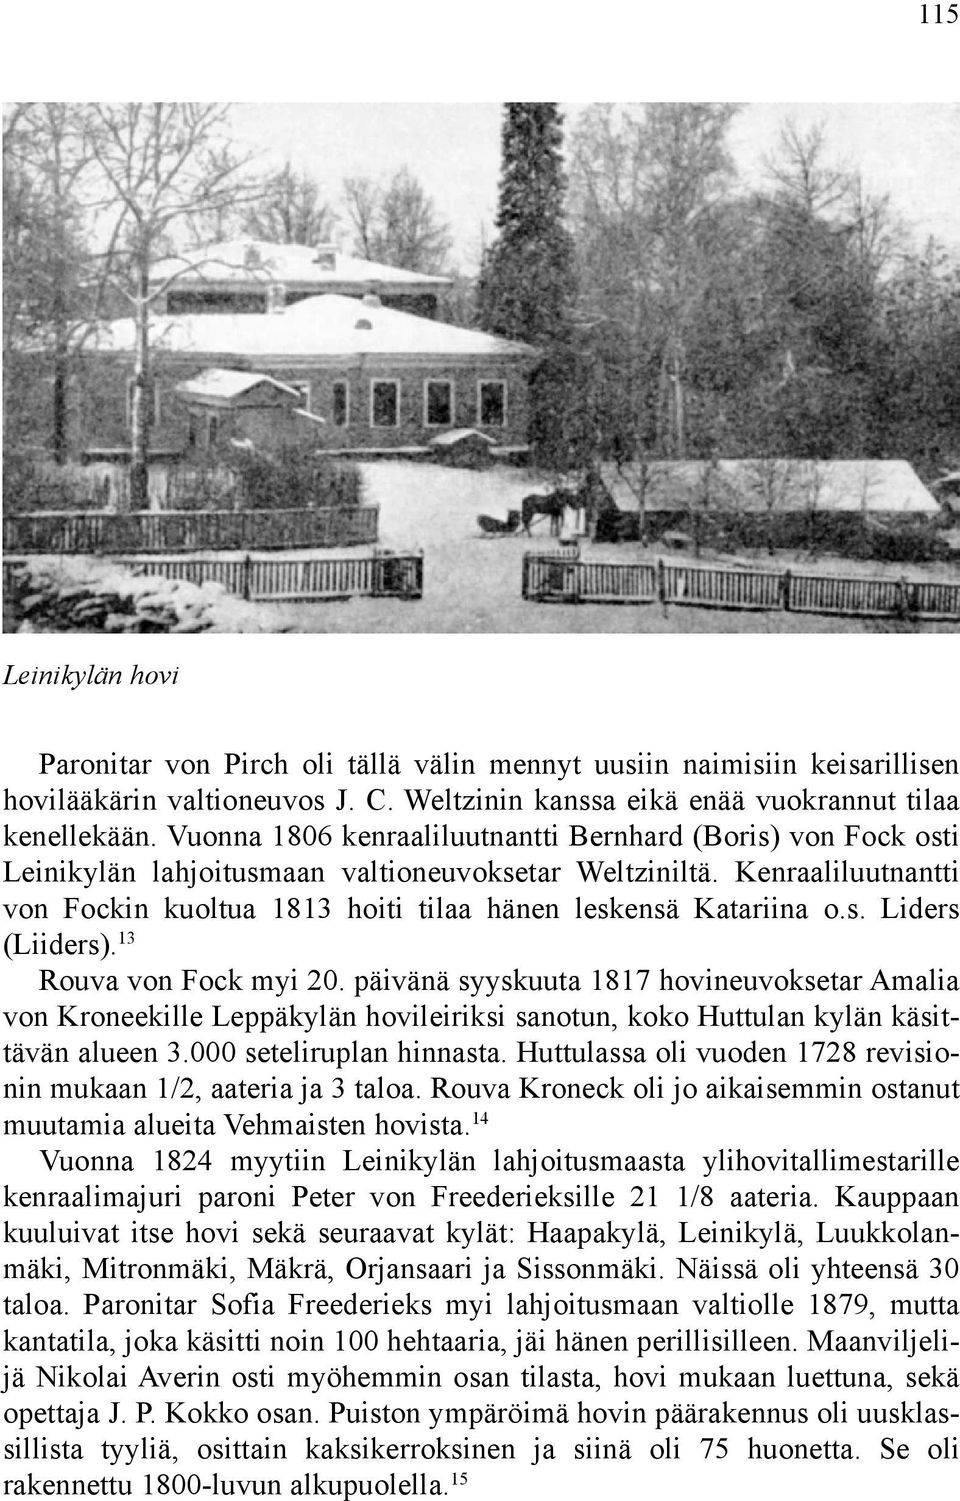 s. Liders (Liiders). 13 Rouva von Fock myi 20. päivänä syyskuuta 1817 hovineuvoksetar Amalia von Kroneekille Leppäkylän hovileiriksi sanotun, koko Huttulan kylän käsittävän alueen 3.